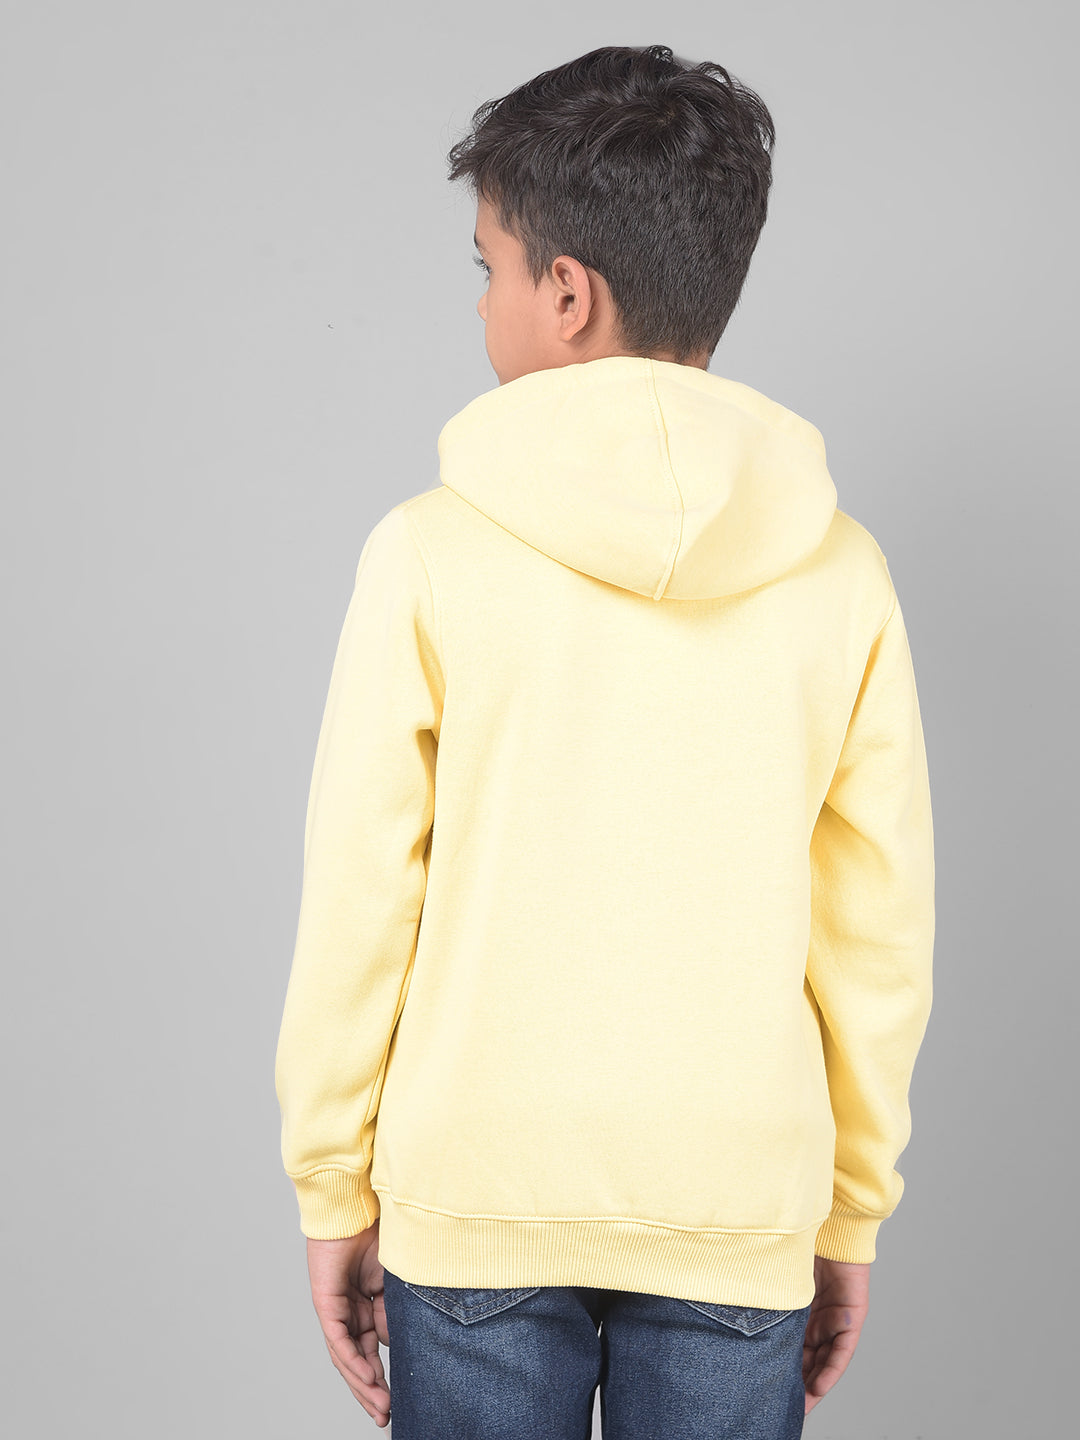 Yellow Hooded Sweatshirt-Boys Sweatshirts-Crimsoune Club